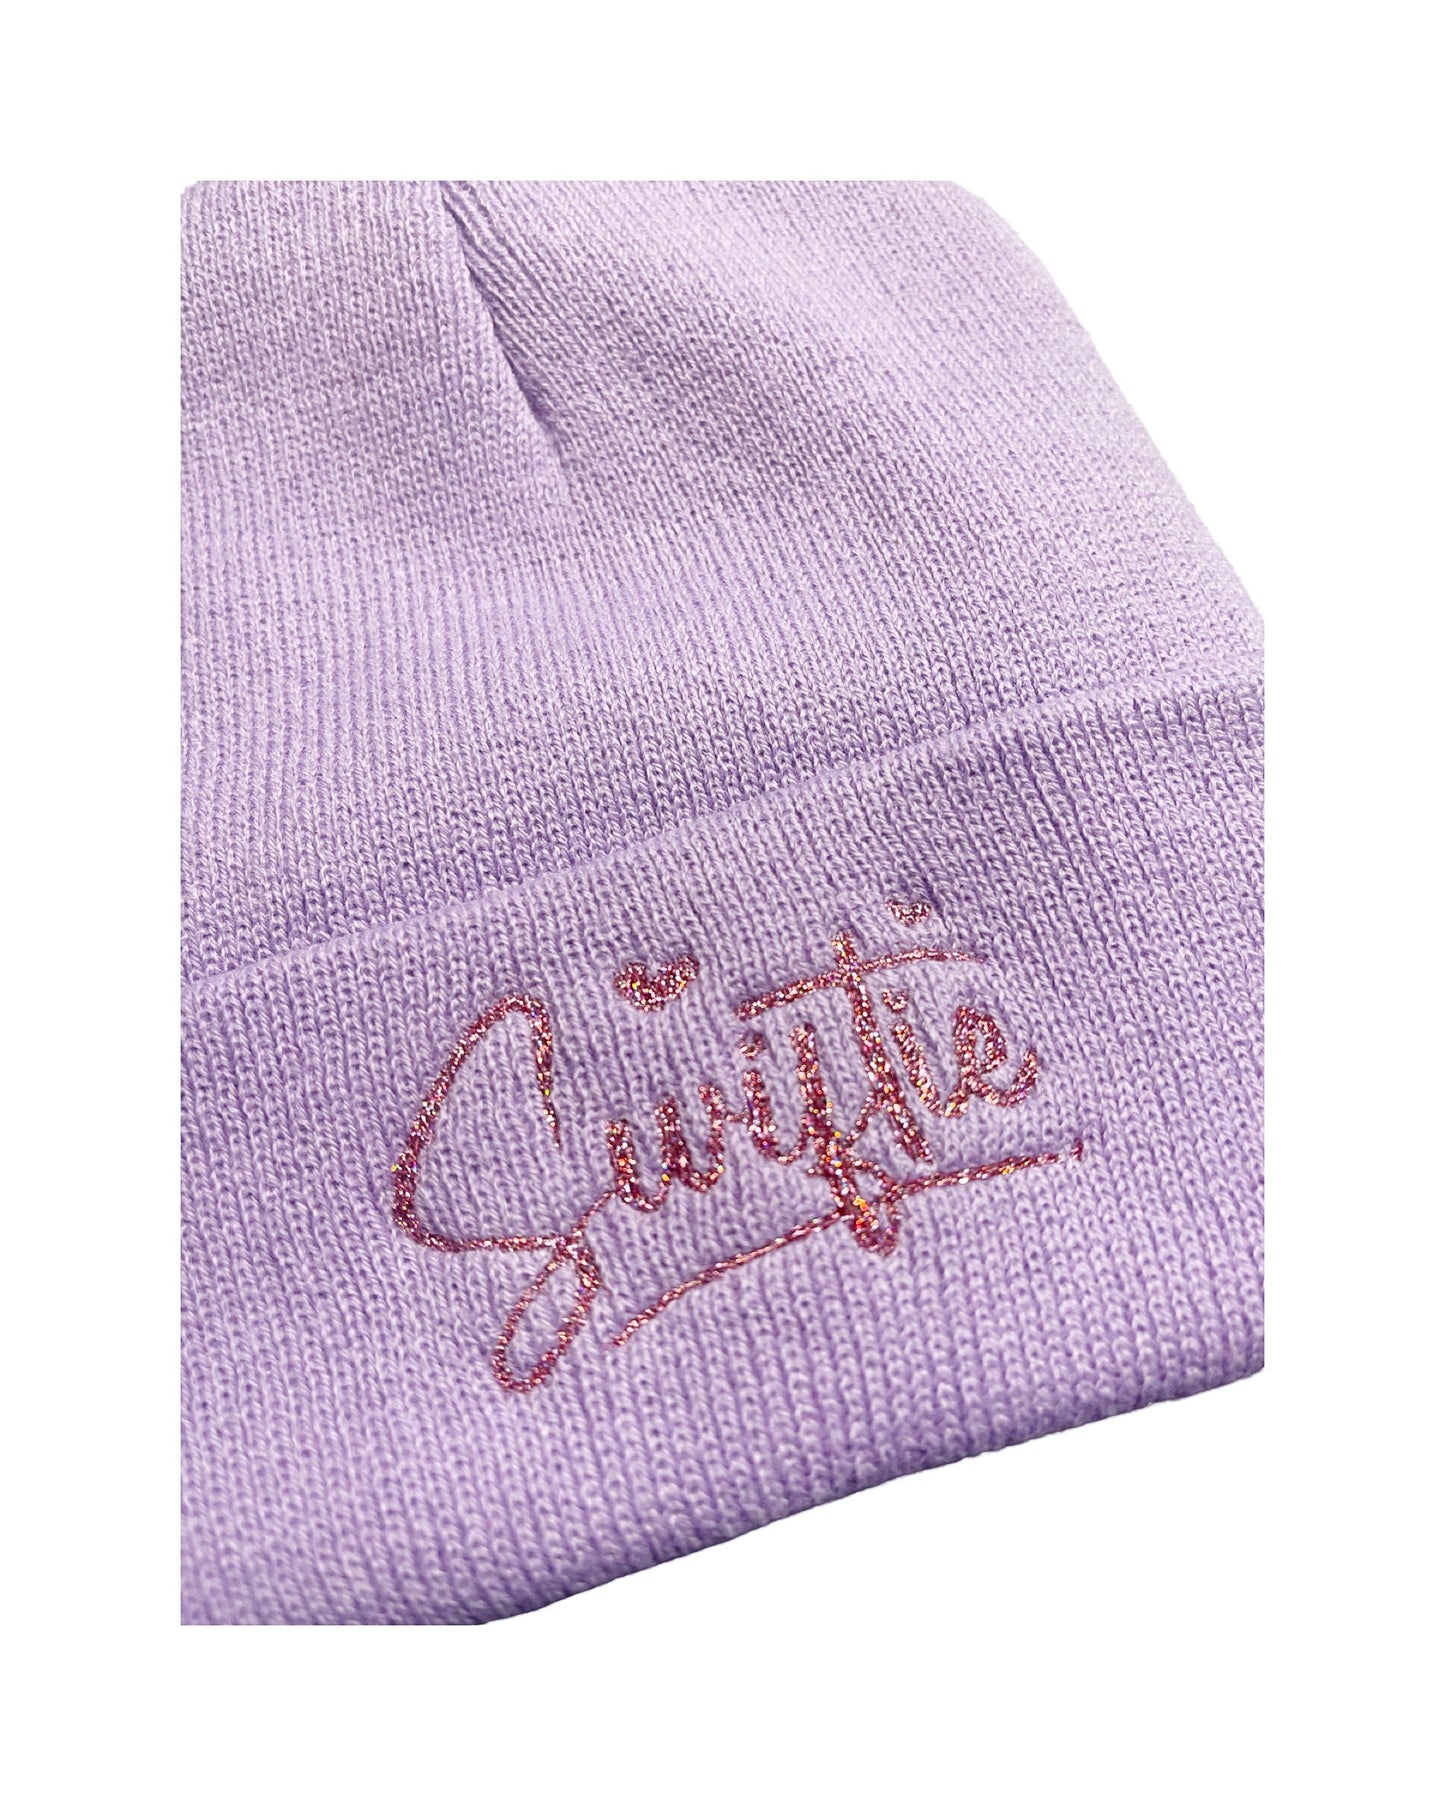 Swiftie Embroidered Beanie